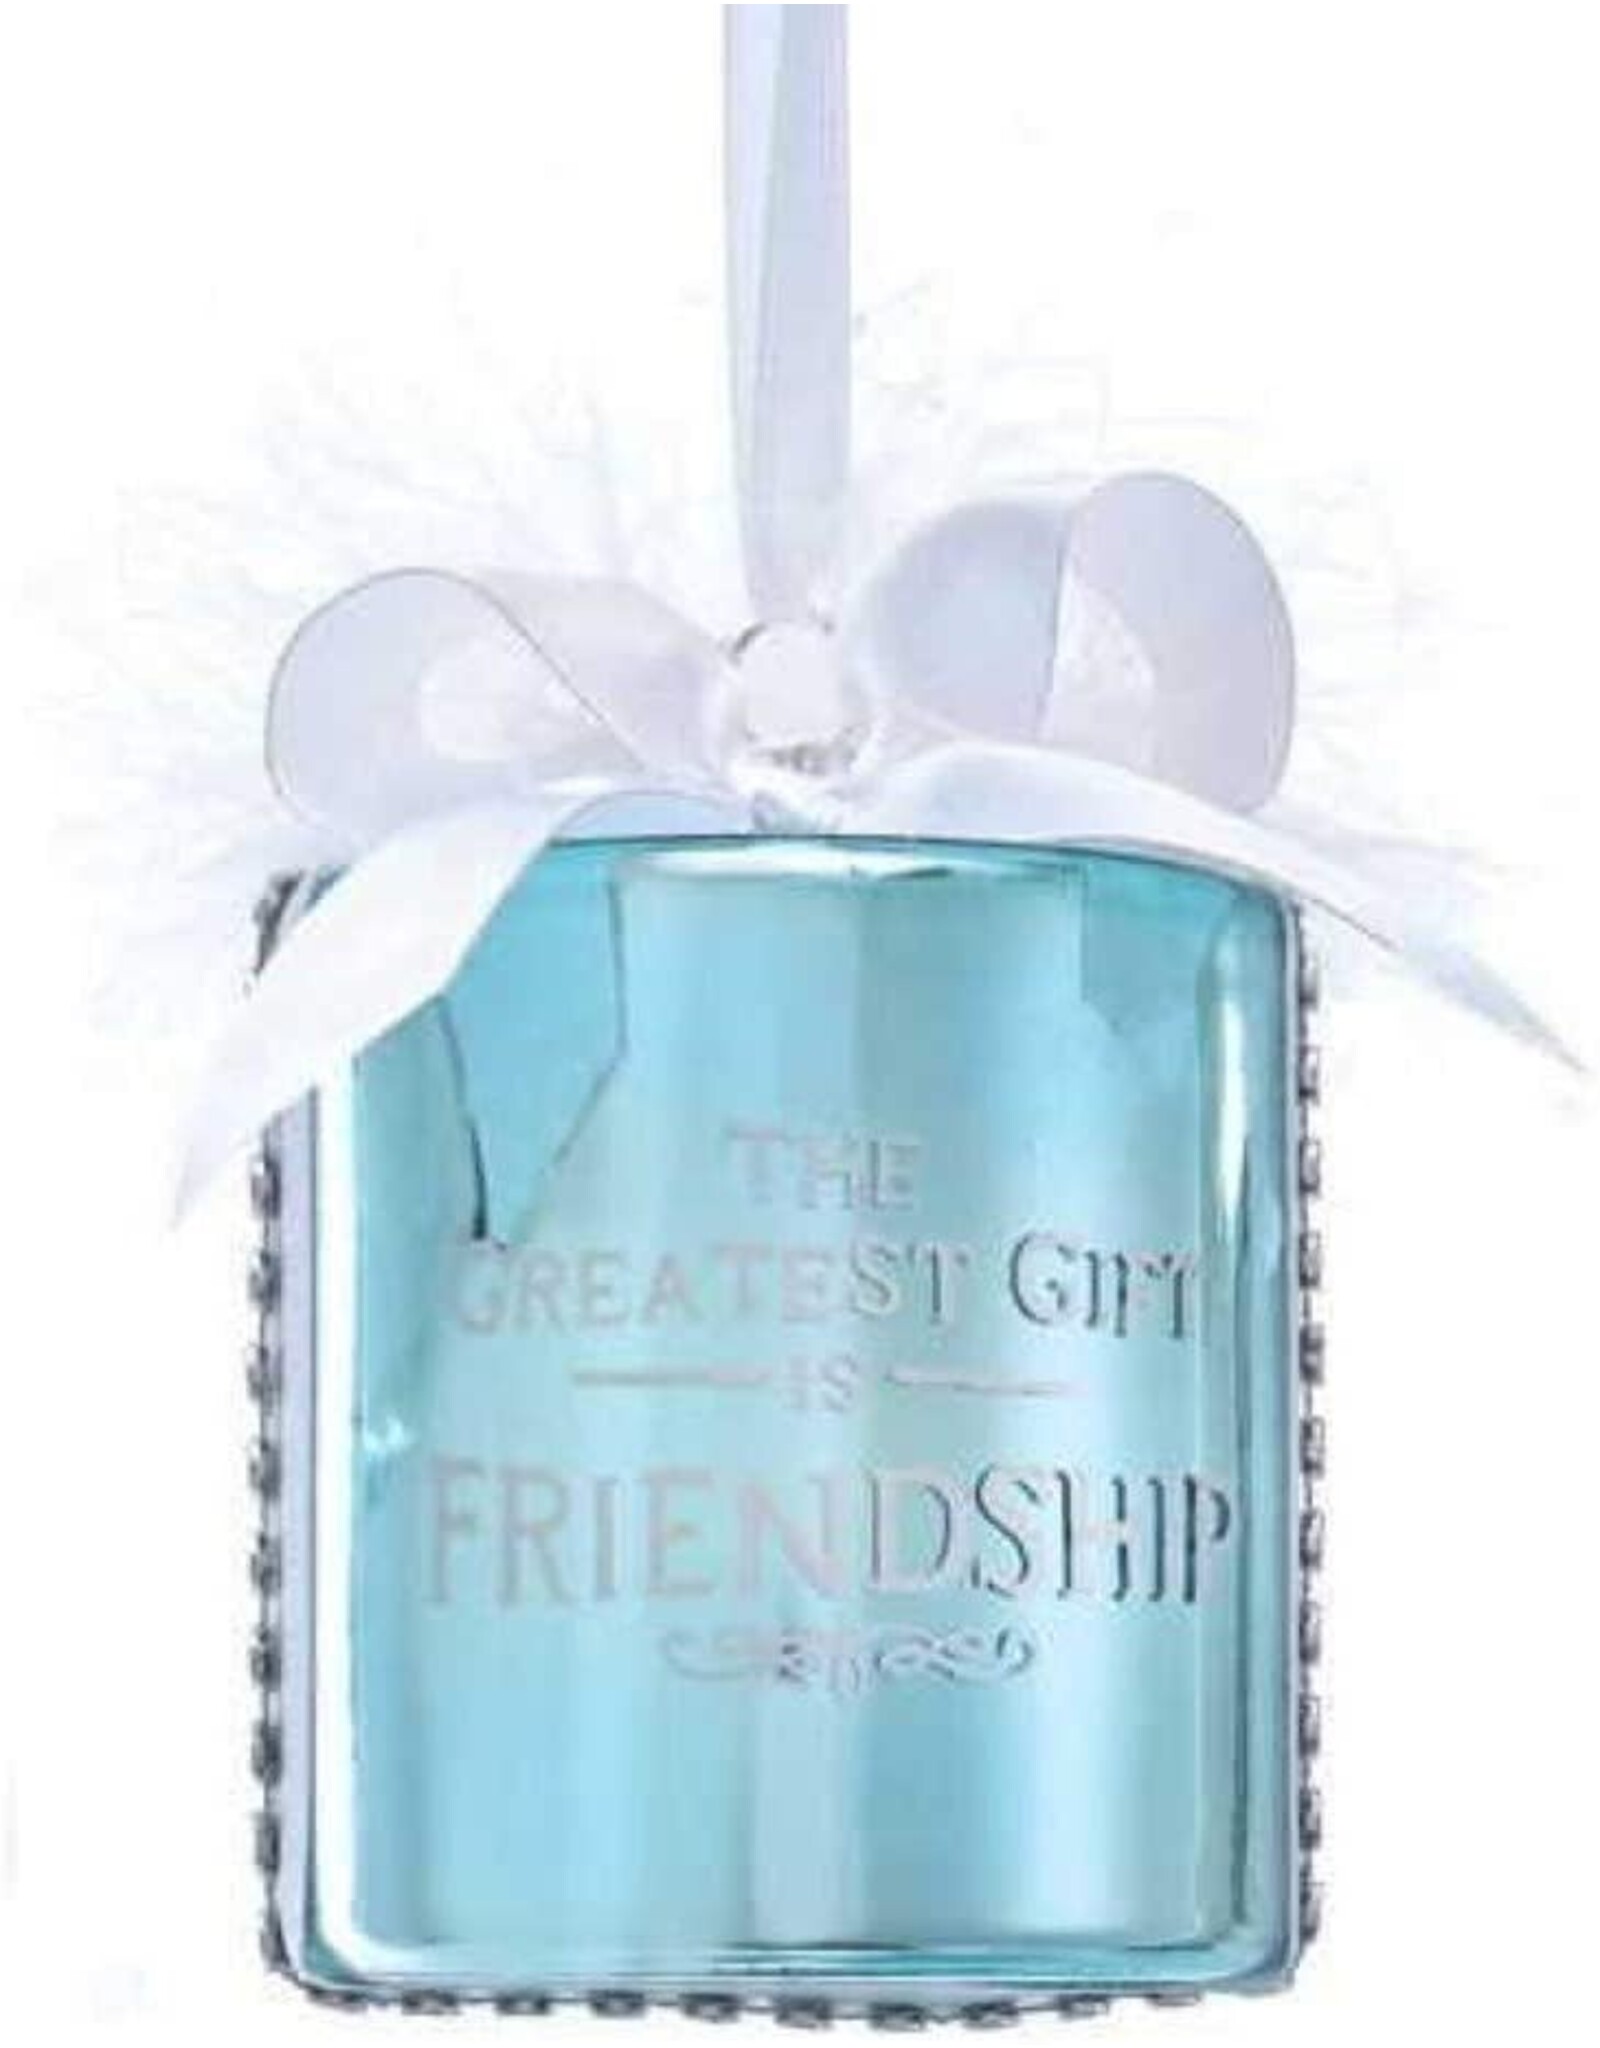 Kurt Adler Glass Tiffany Style Gift Box Ornament w Sentiment FRIENDSHIP